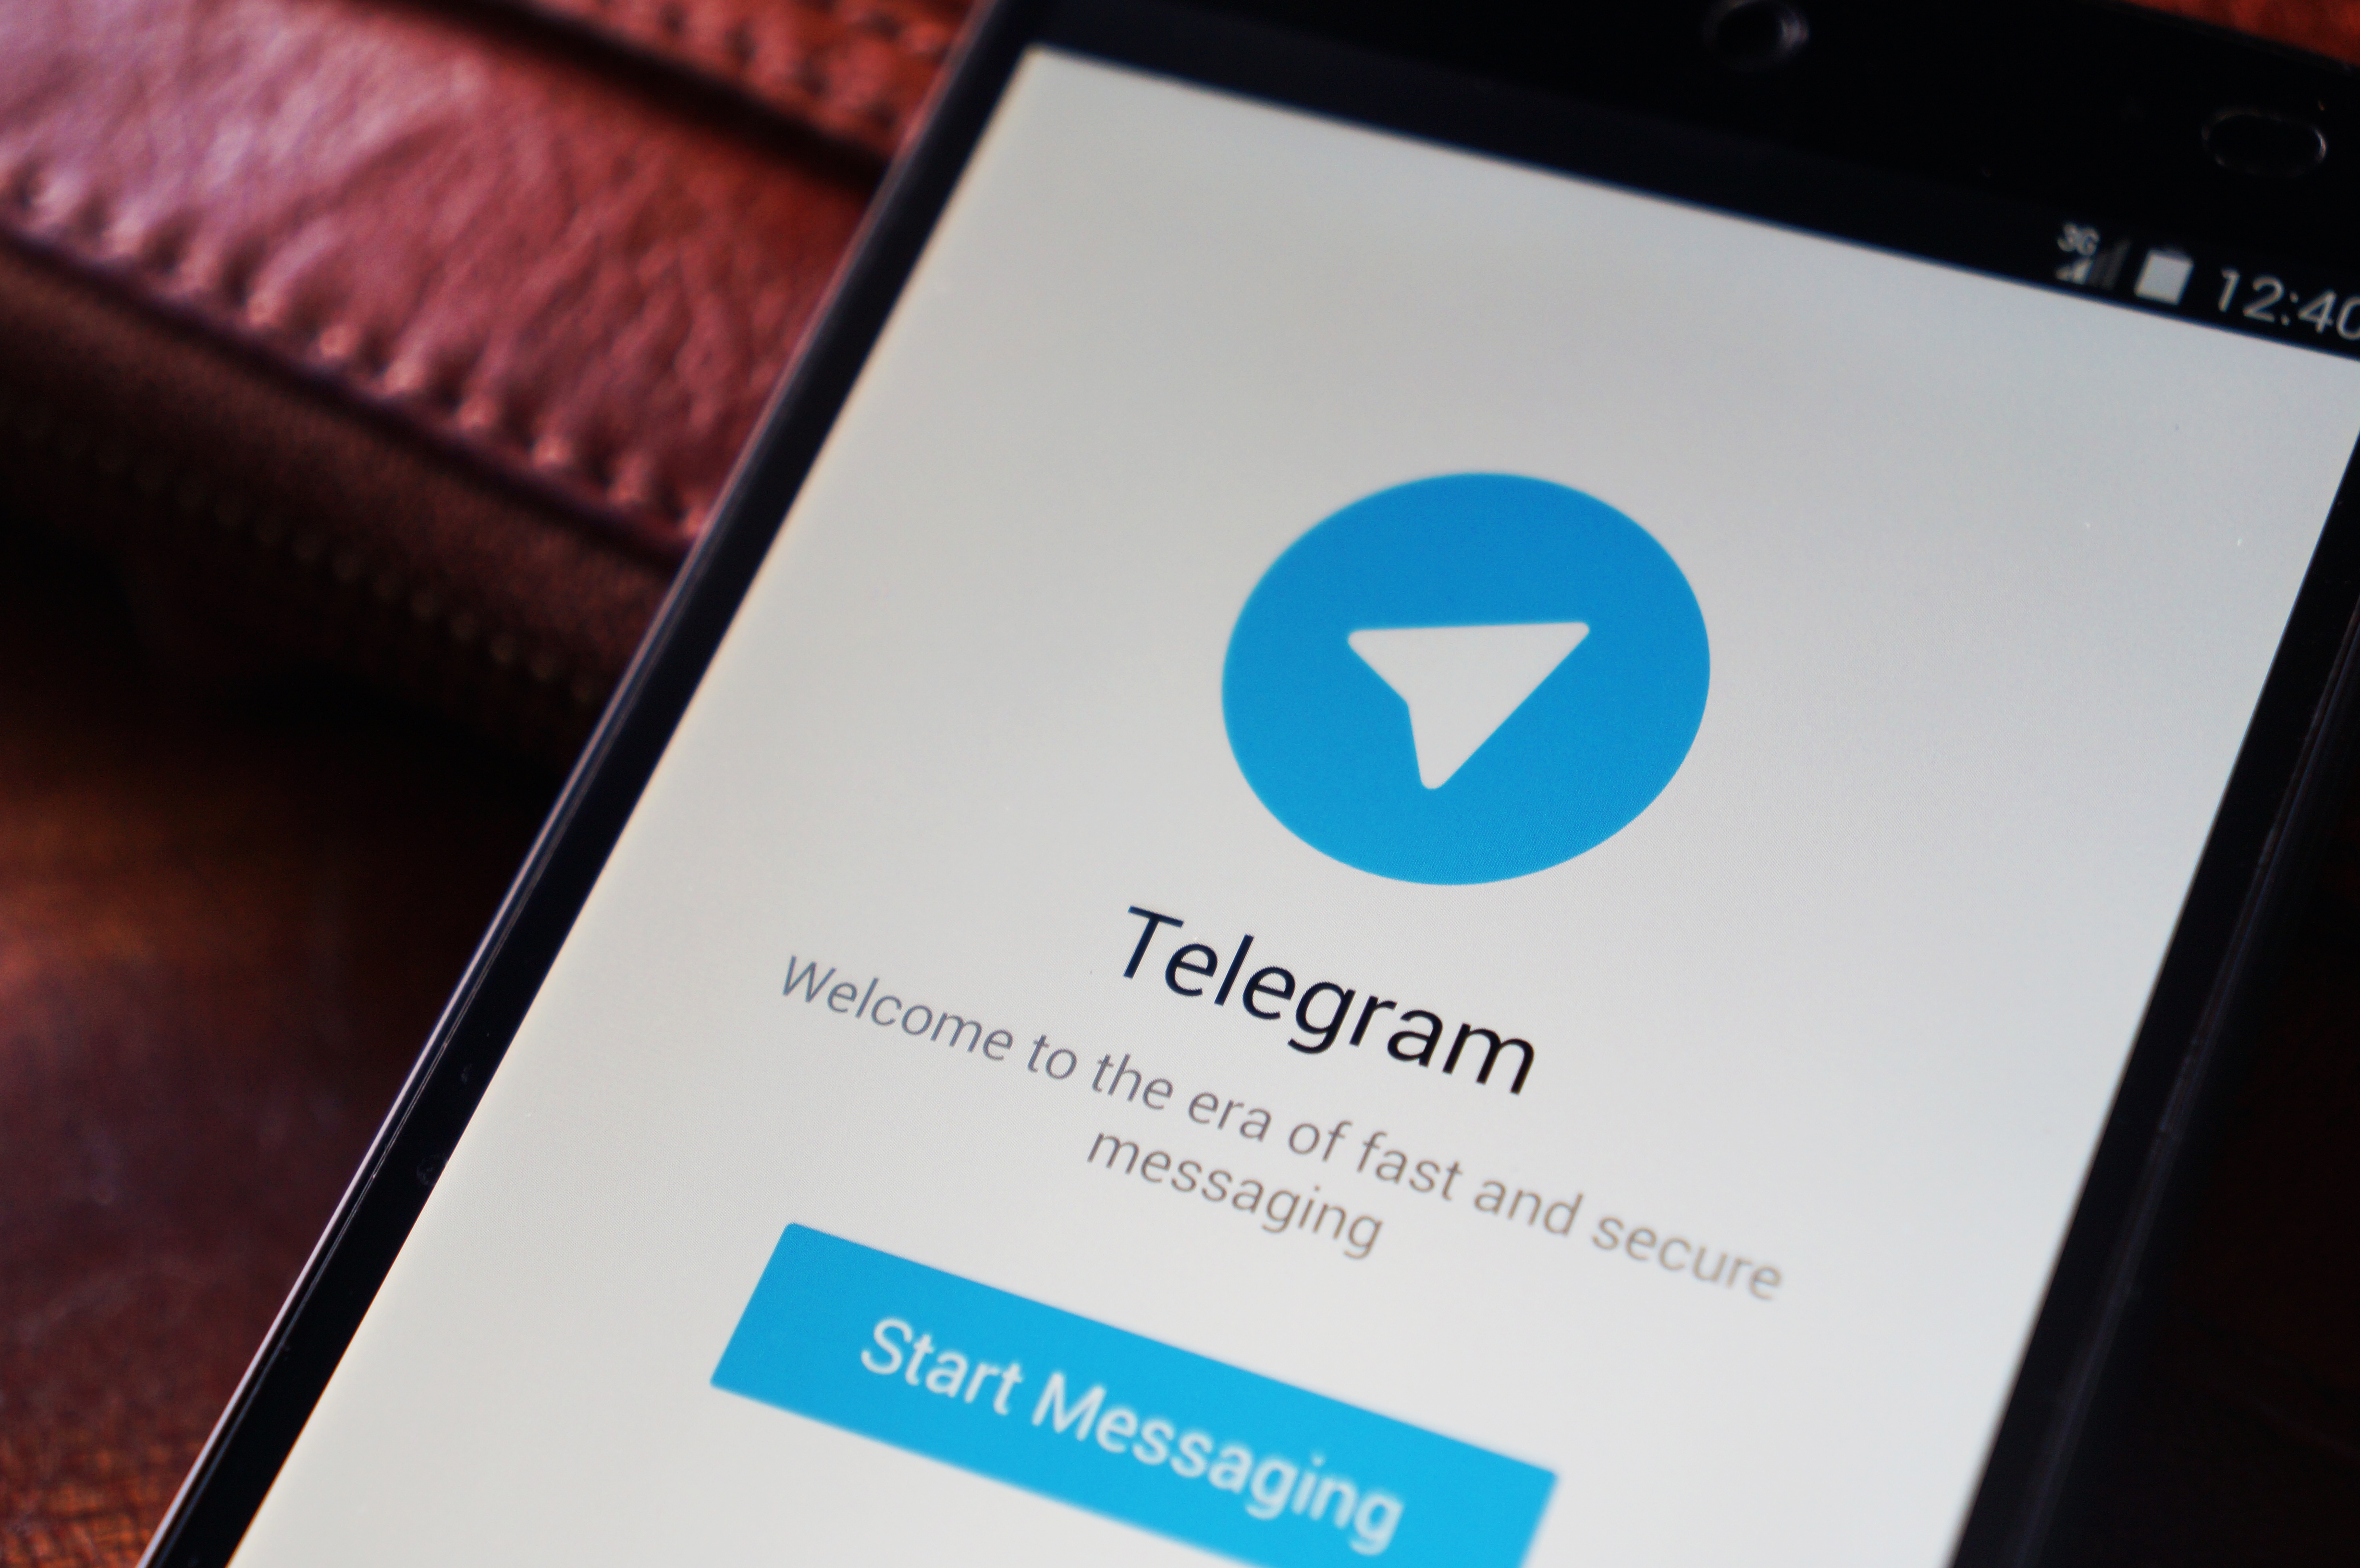 freepik premium telegram